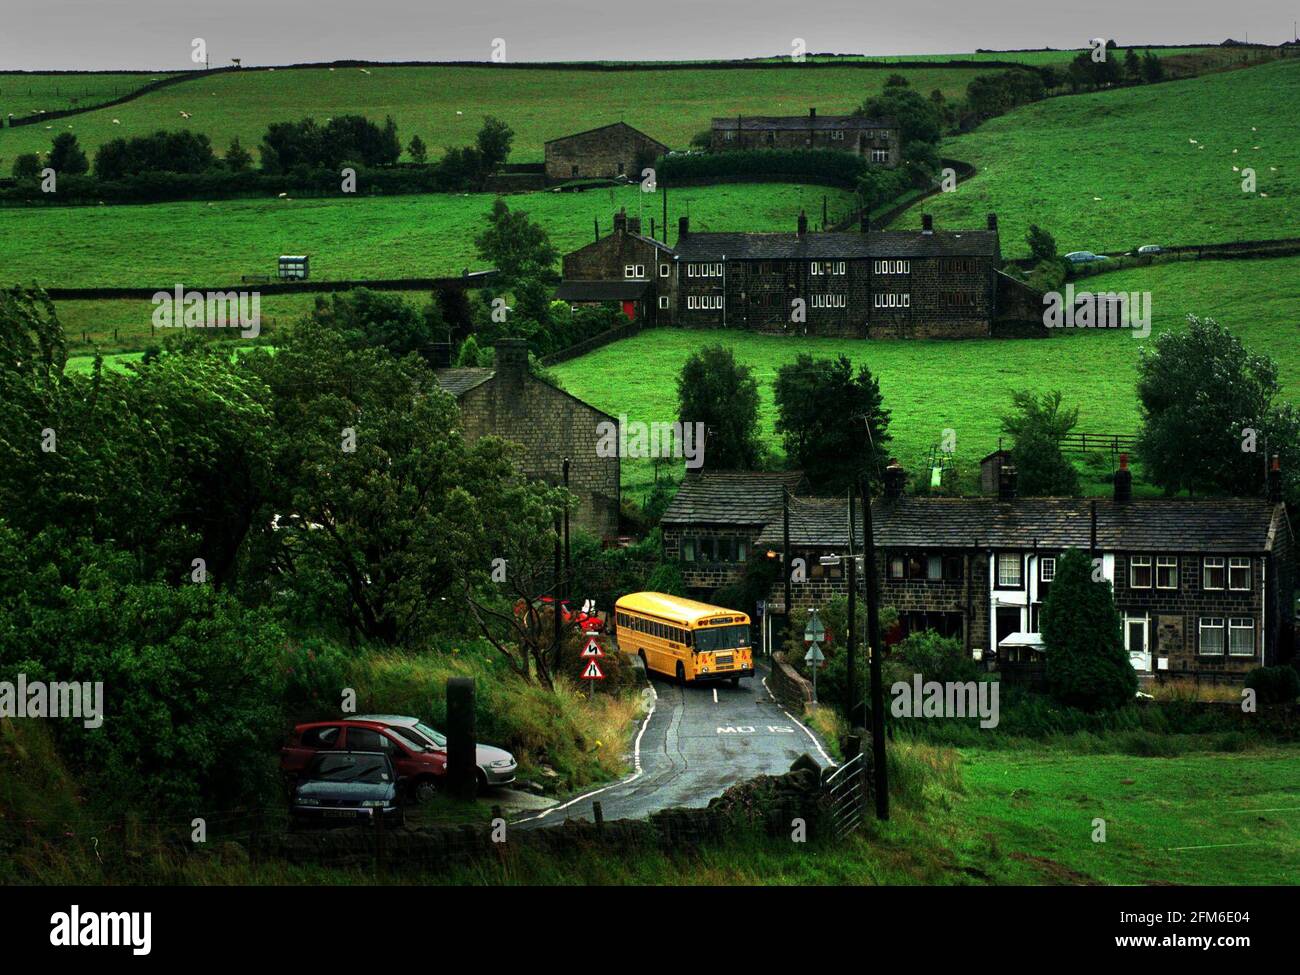 Un autobus scolastico in stile americano in prova a Colden, Yorkshire, agosto 2001 Foto Stock